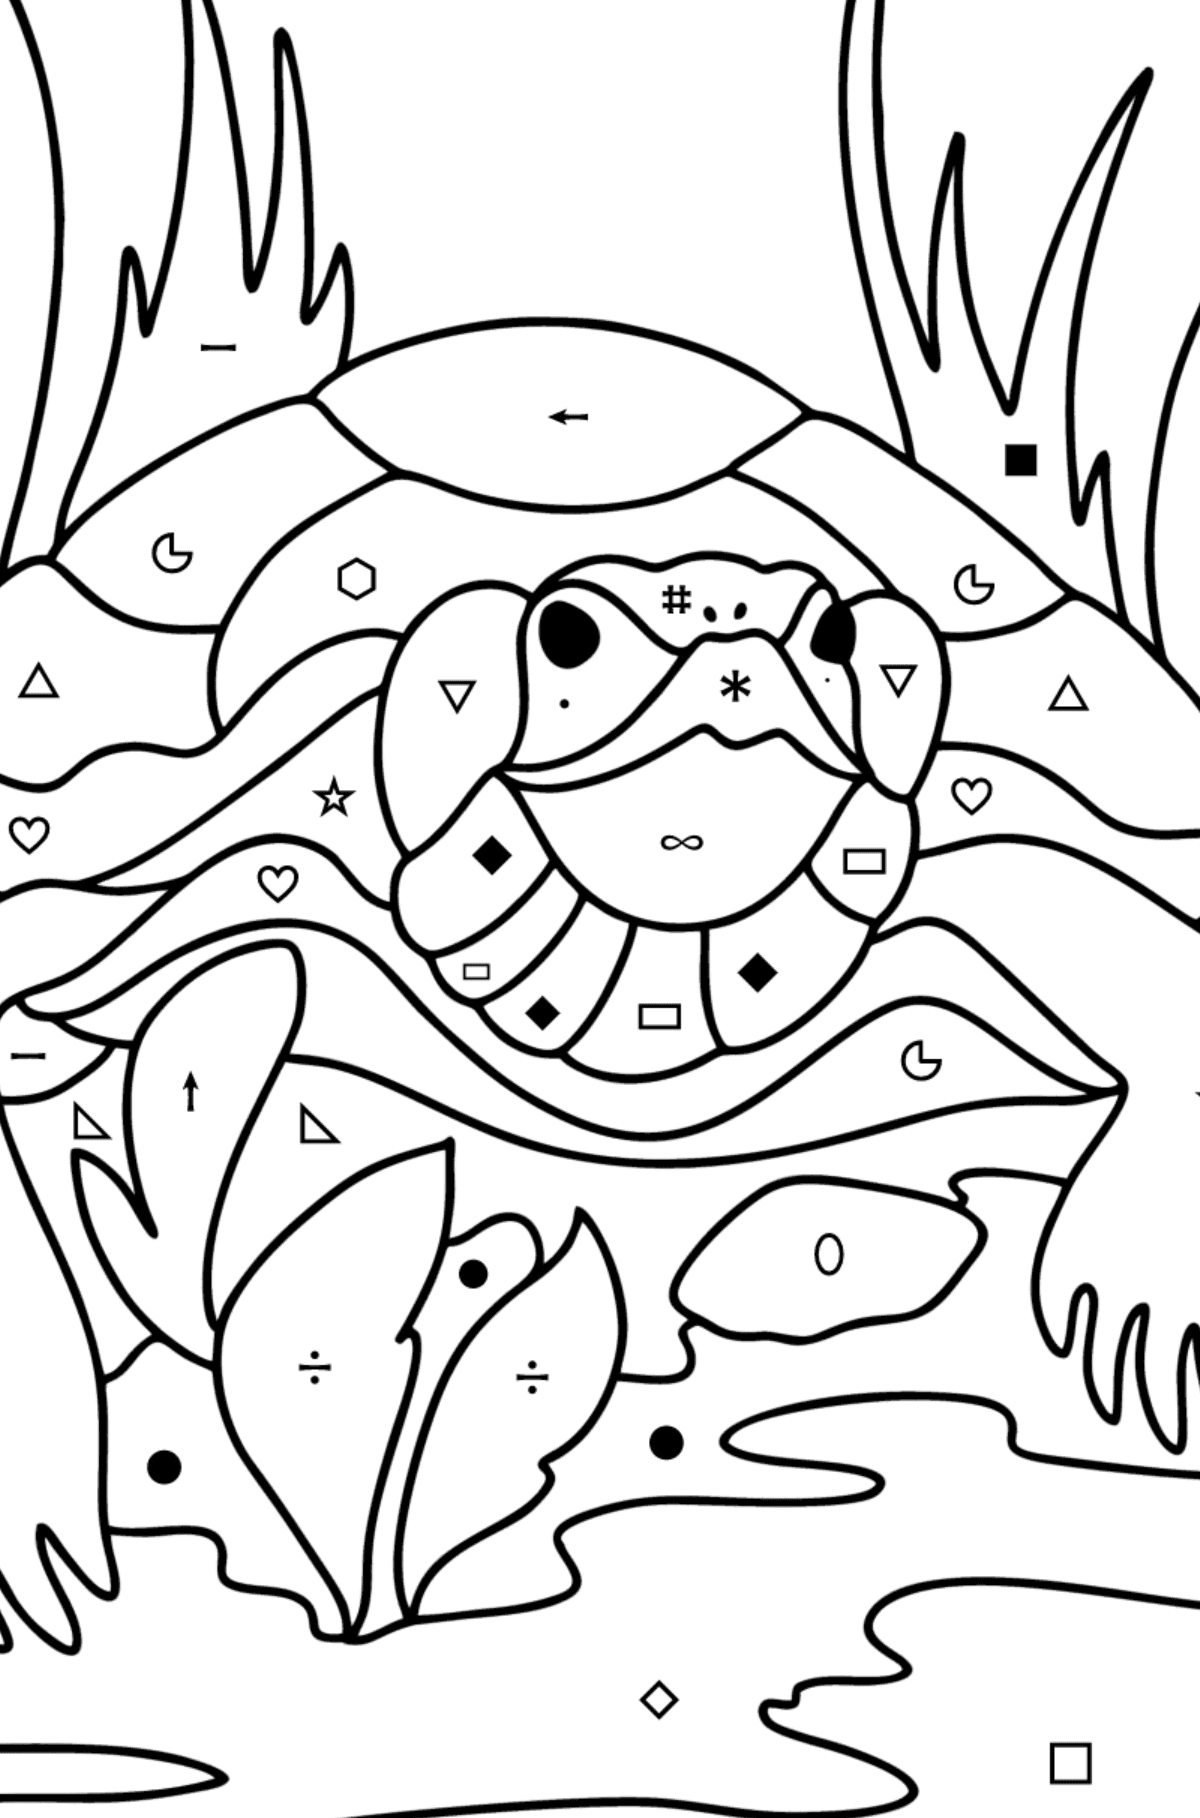 Disegno da colorare Tartaruga - Colorare per simboli e forme geometriche per bambini